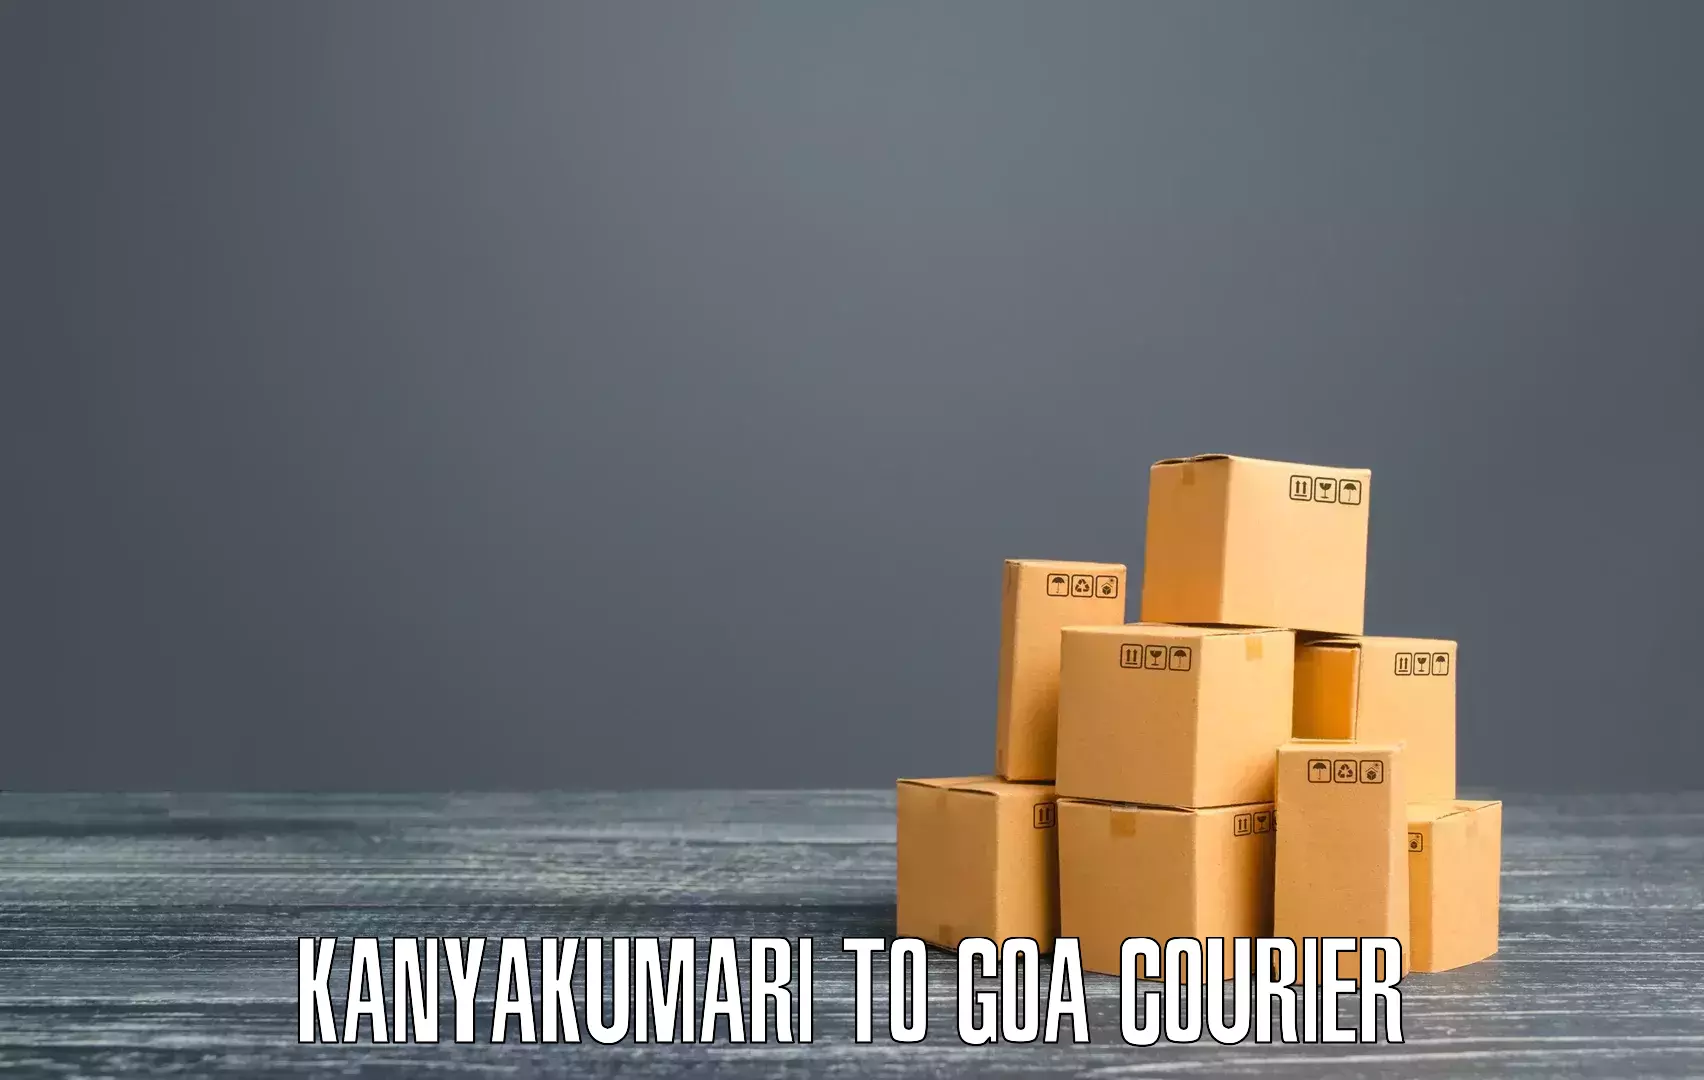 Ocean freight courier Kanyakumari to Goa